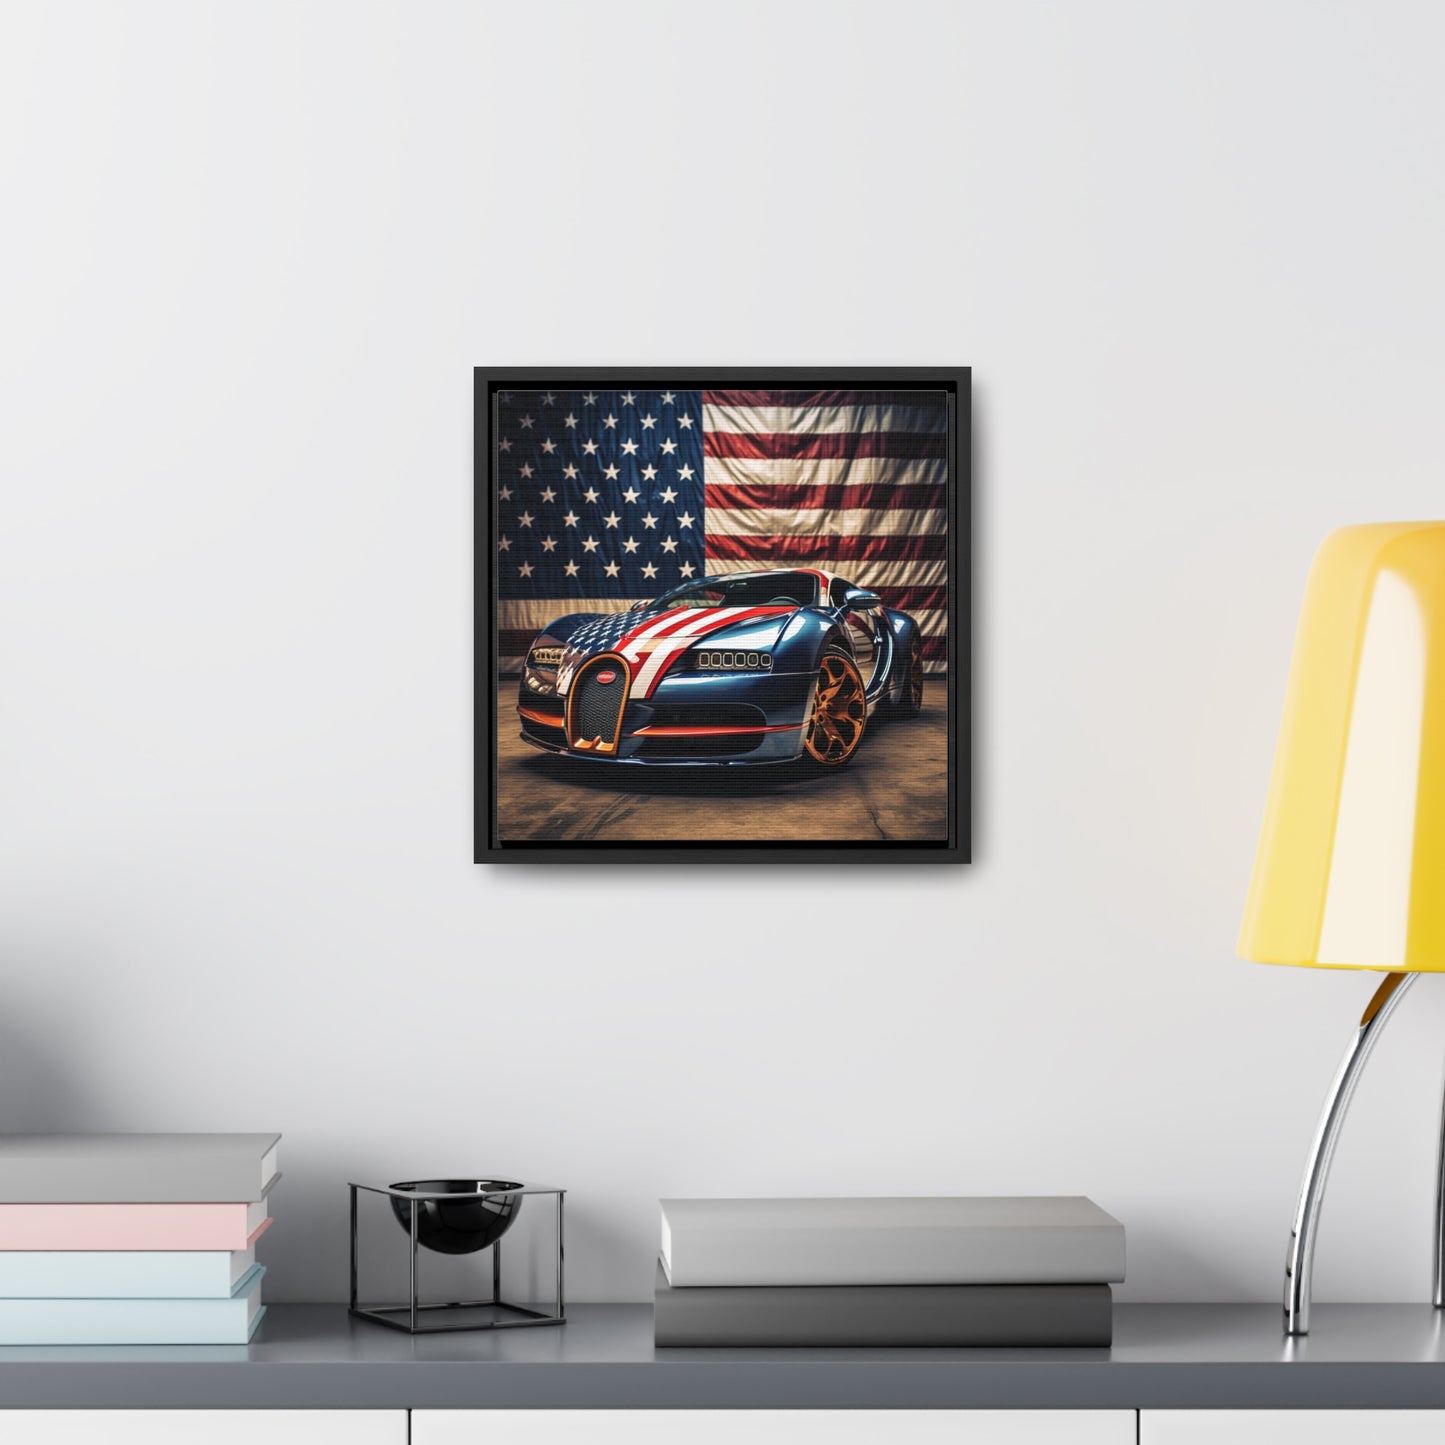 Gallery Canvas Wraps, Square Frame Bugatti Flag American 4